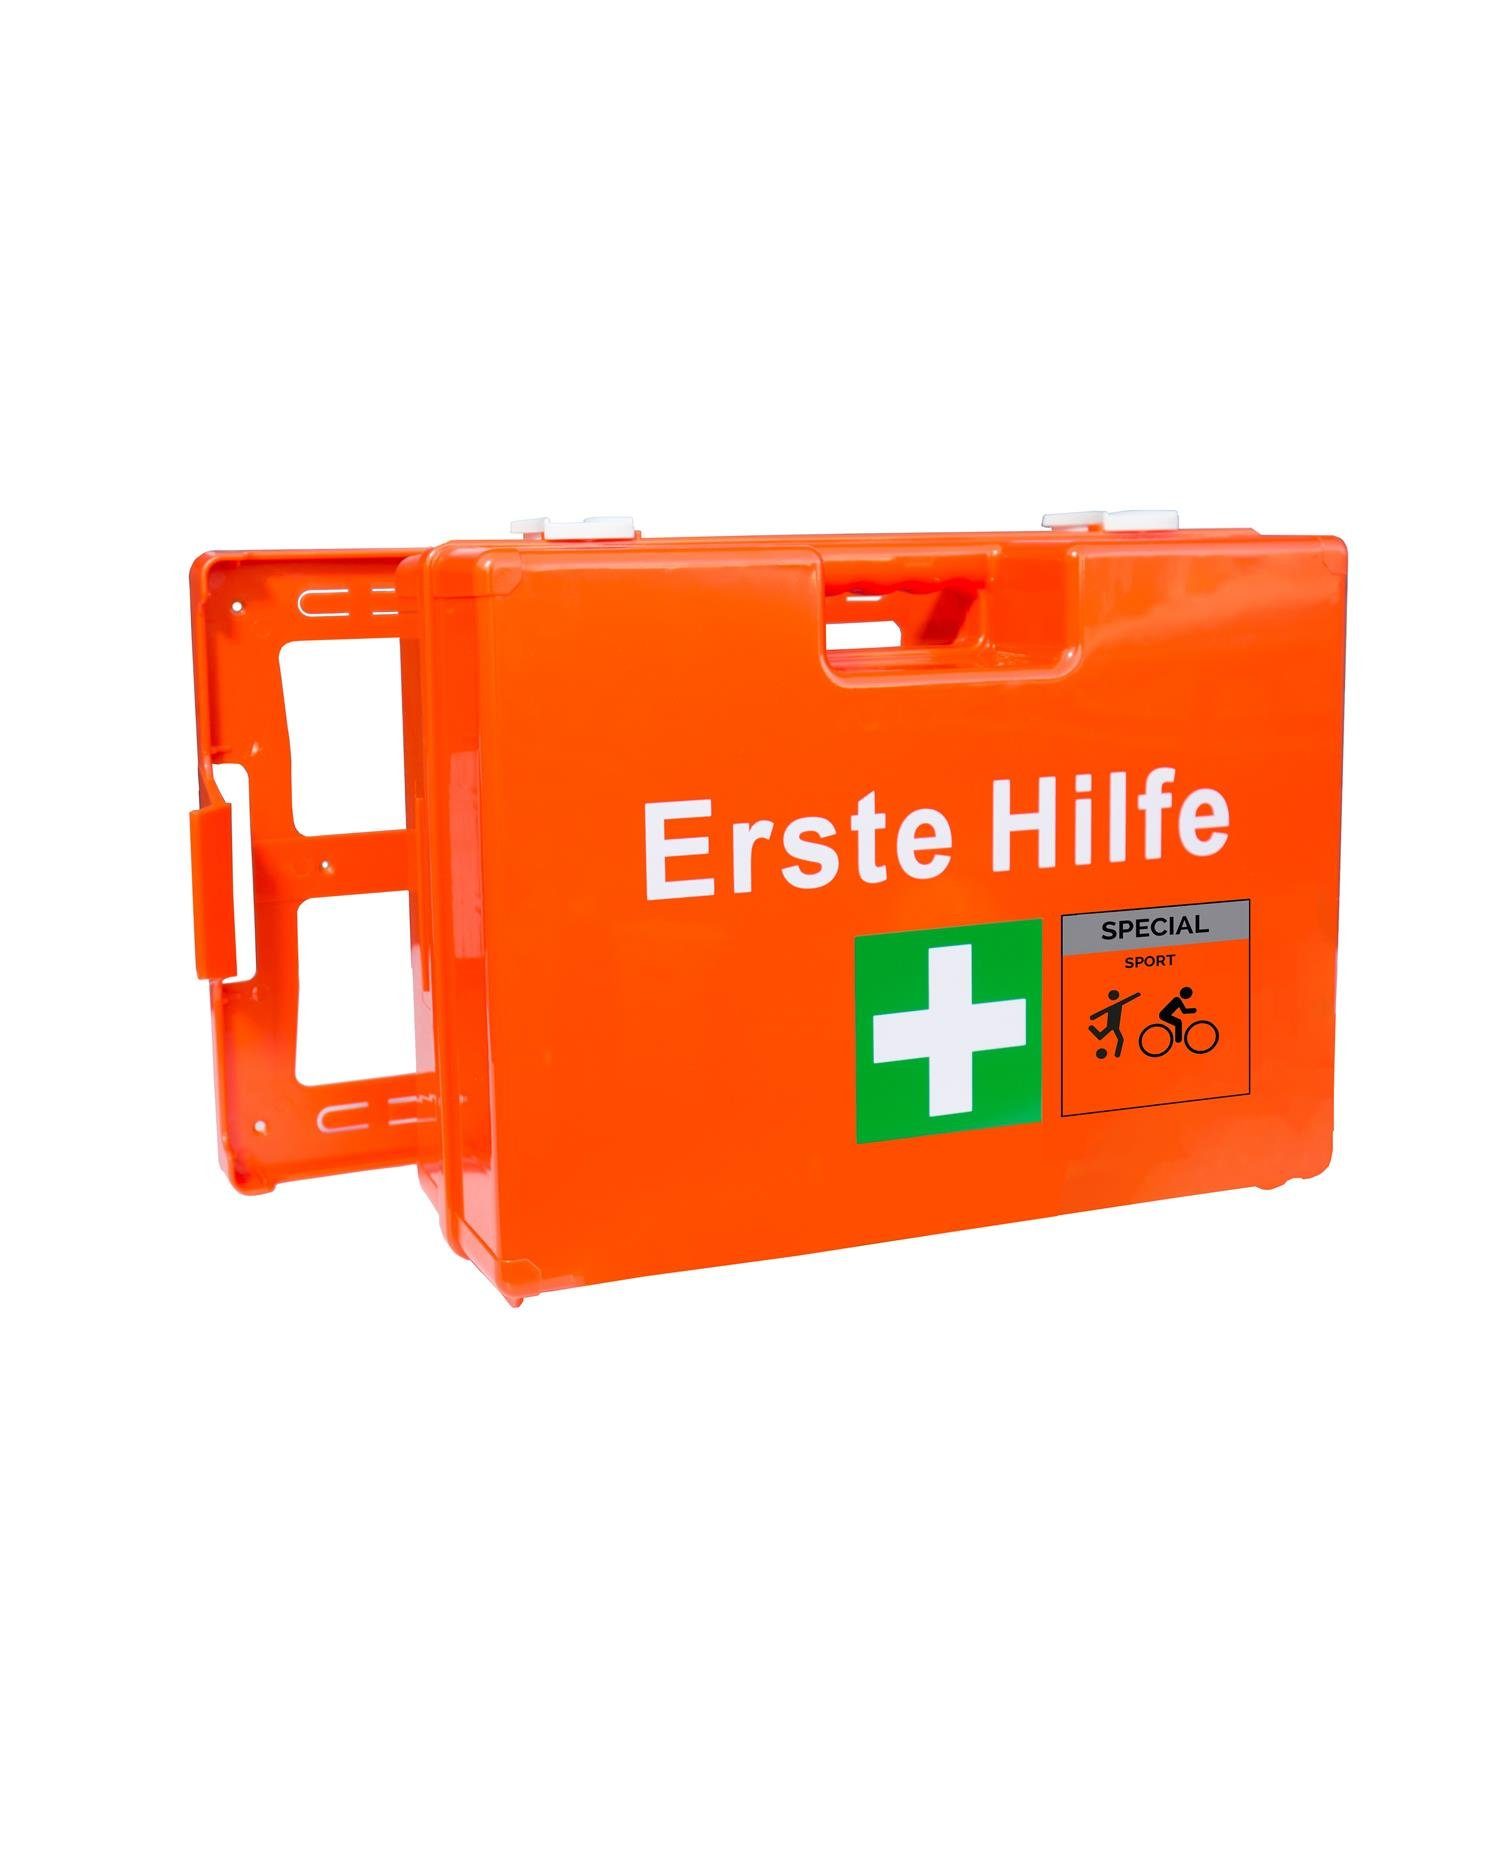 Steelboxx Arzttasche »Erste Hilfe Koffer L mit Füllung DIN 13 157 -«  (1-tlg), mit Verbandstofffüllung nach DIN 13 157 + Branchenspezifische  Füllung: SPORT online kaufen | OTTO